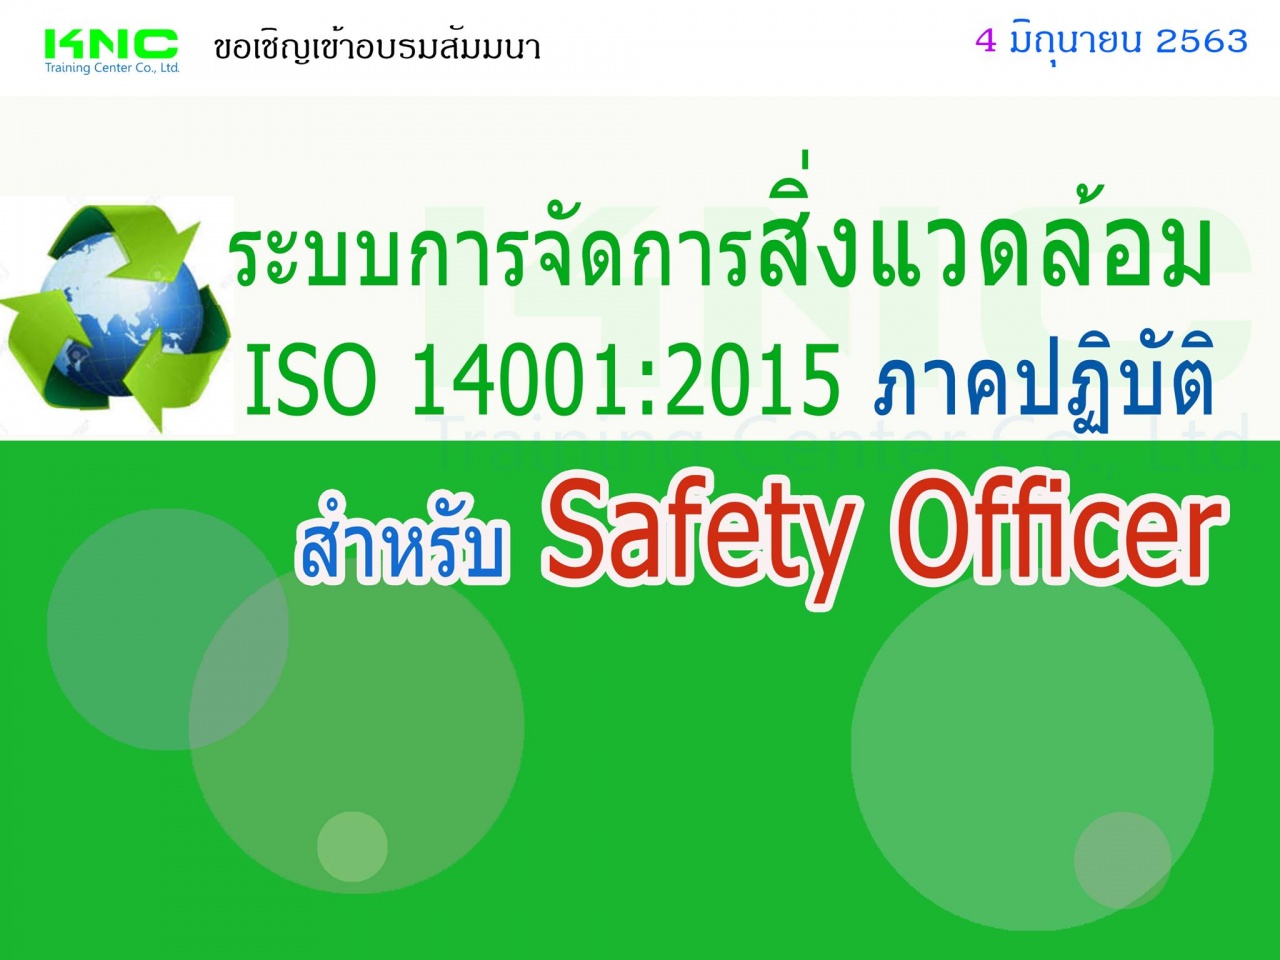 ระบบการจัดการสิ่งแวดล้อม ISO 14001:2015 (ภาคปฏิบัติ) สำหรับ Safety Officer